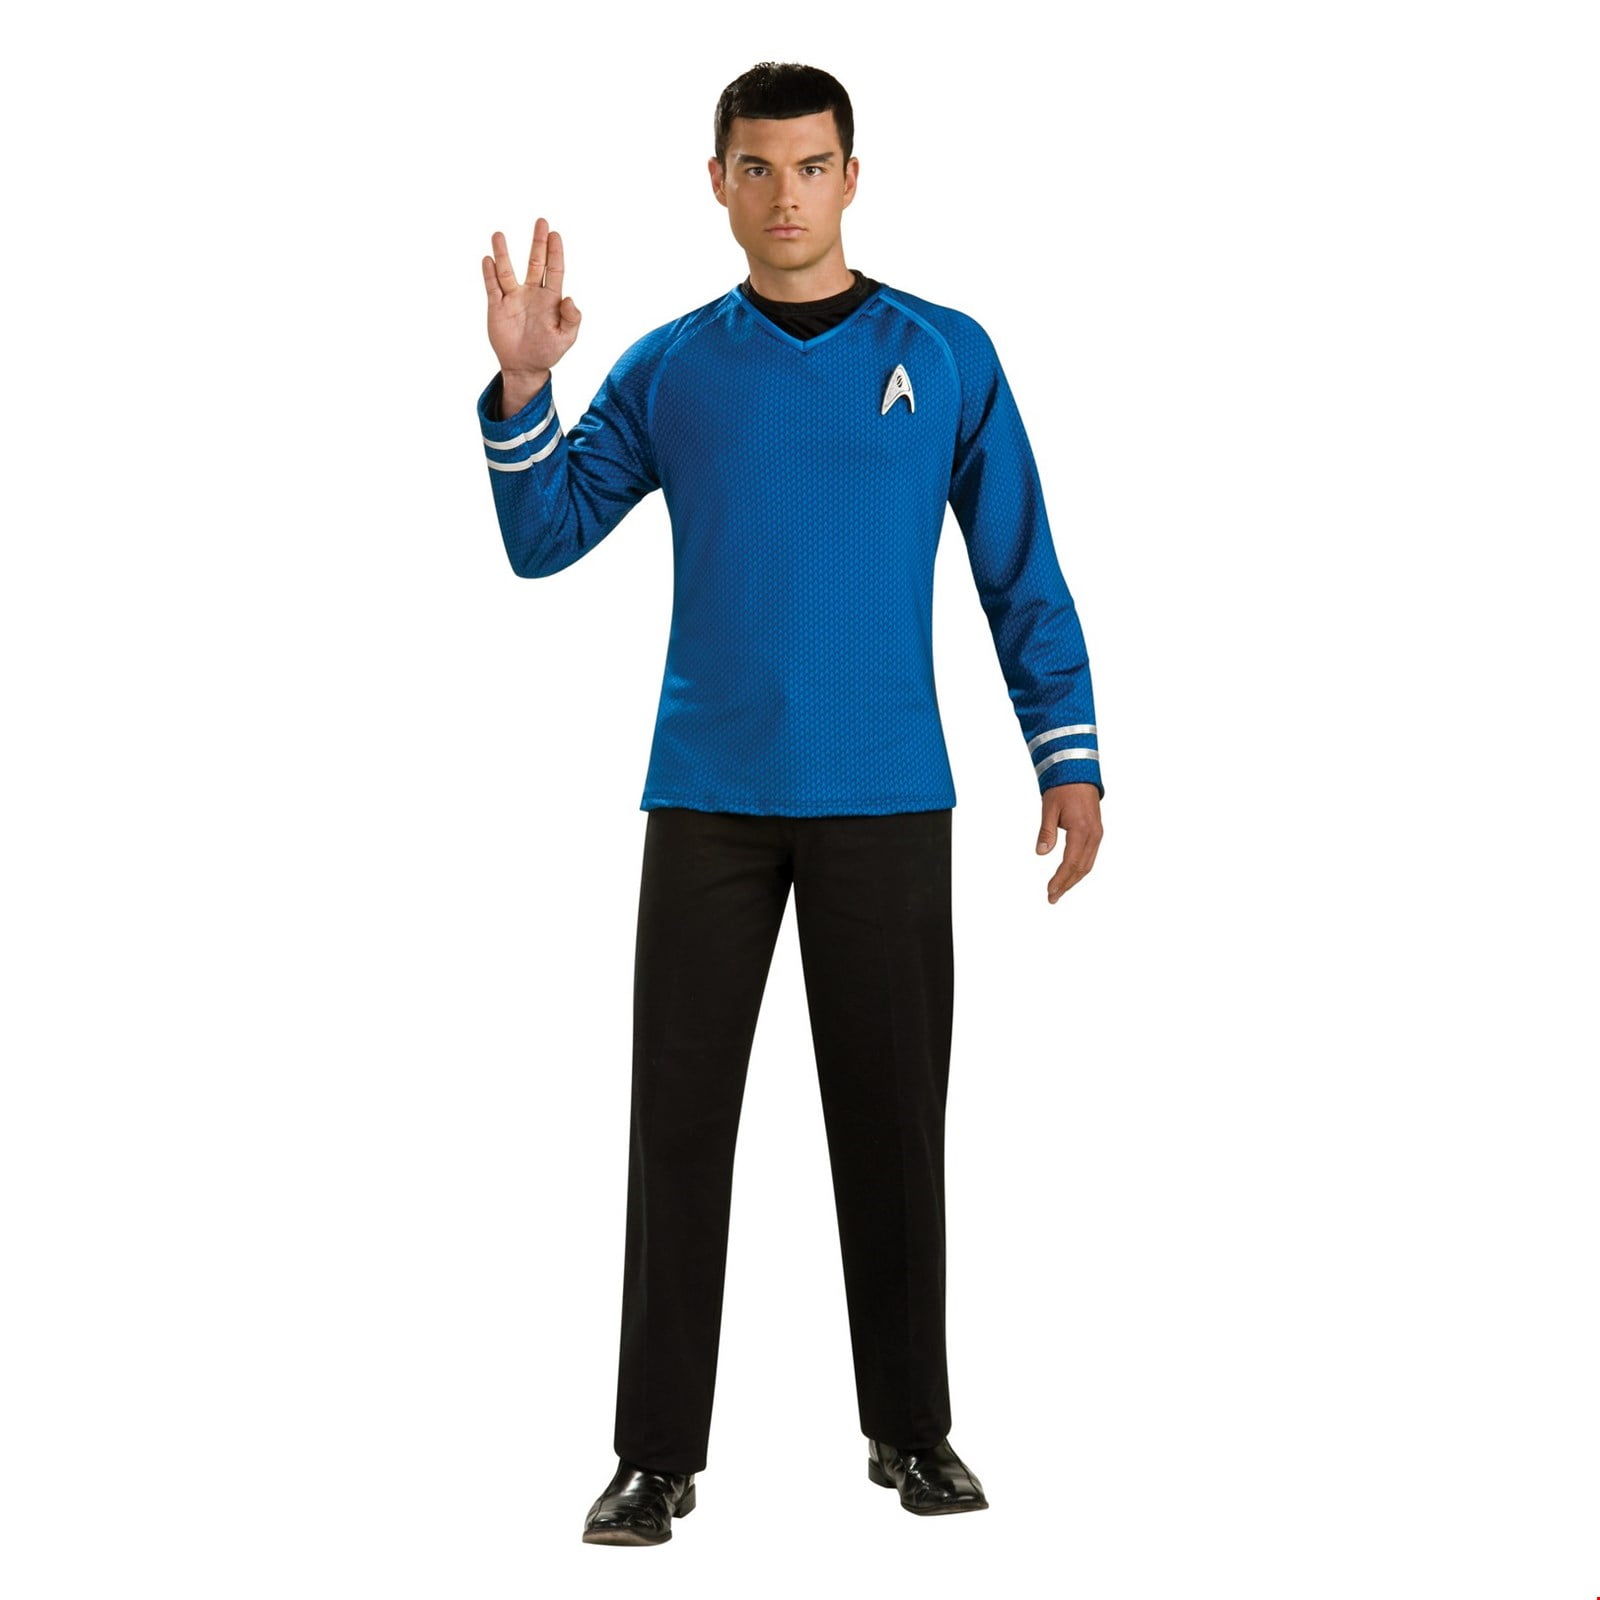 star trek spock costume